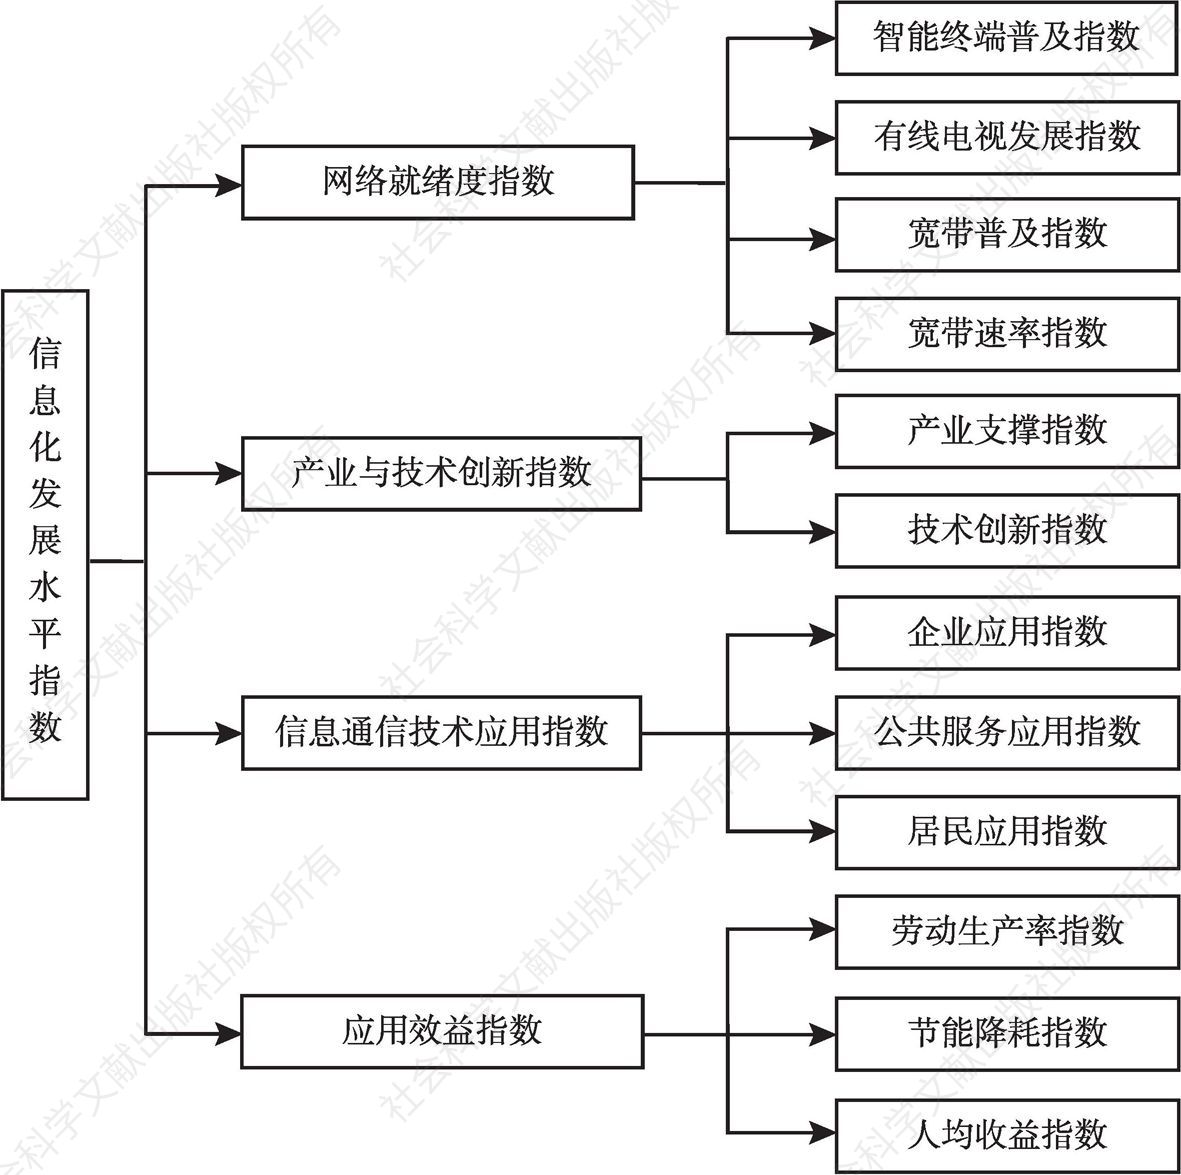 图1 河南省信息化发展水平评估指标框架